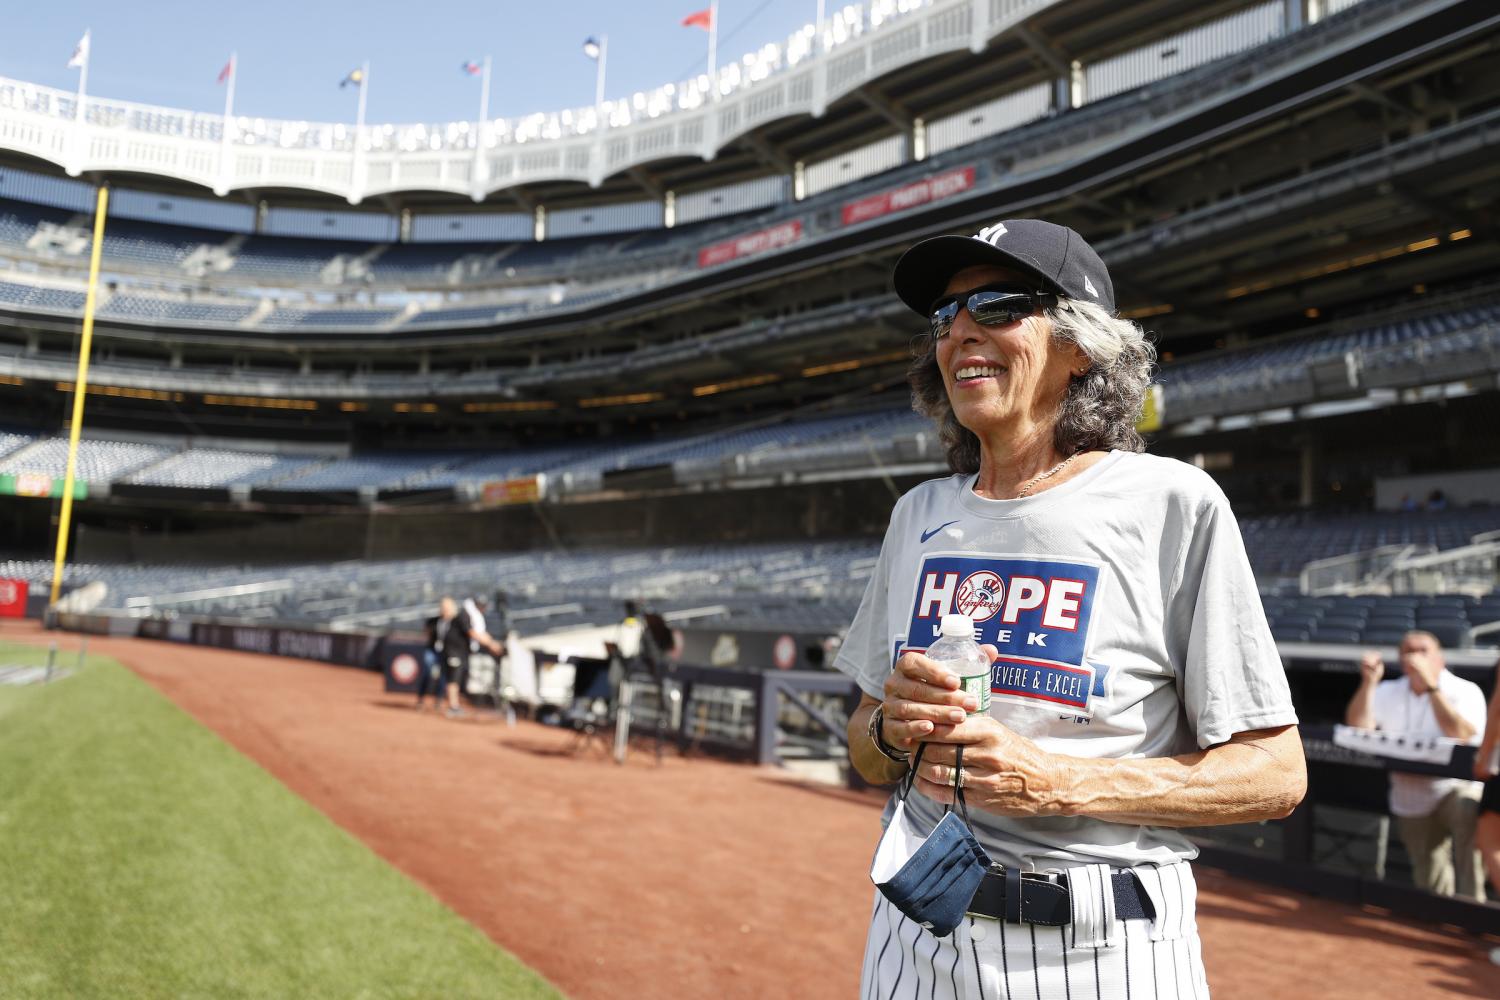 Yankees’ HOPE Week is a Grand Slam AmeriCorps